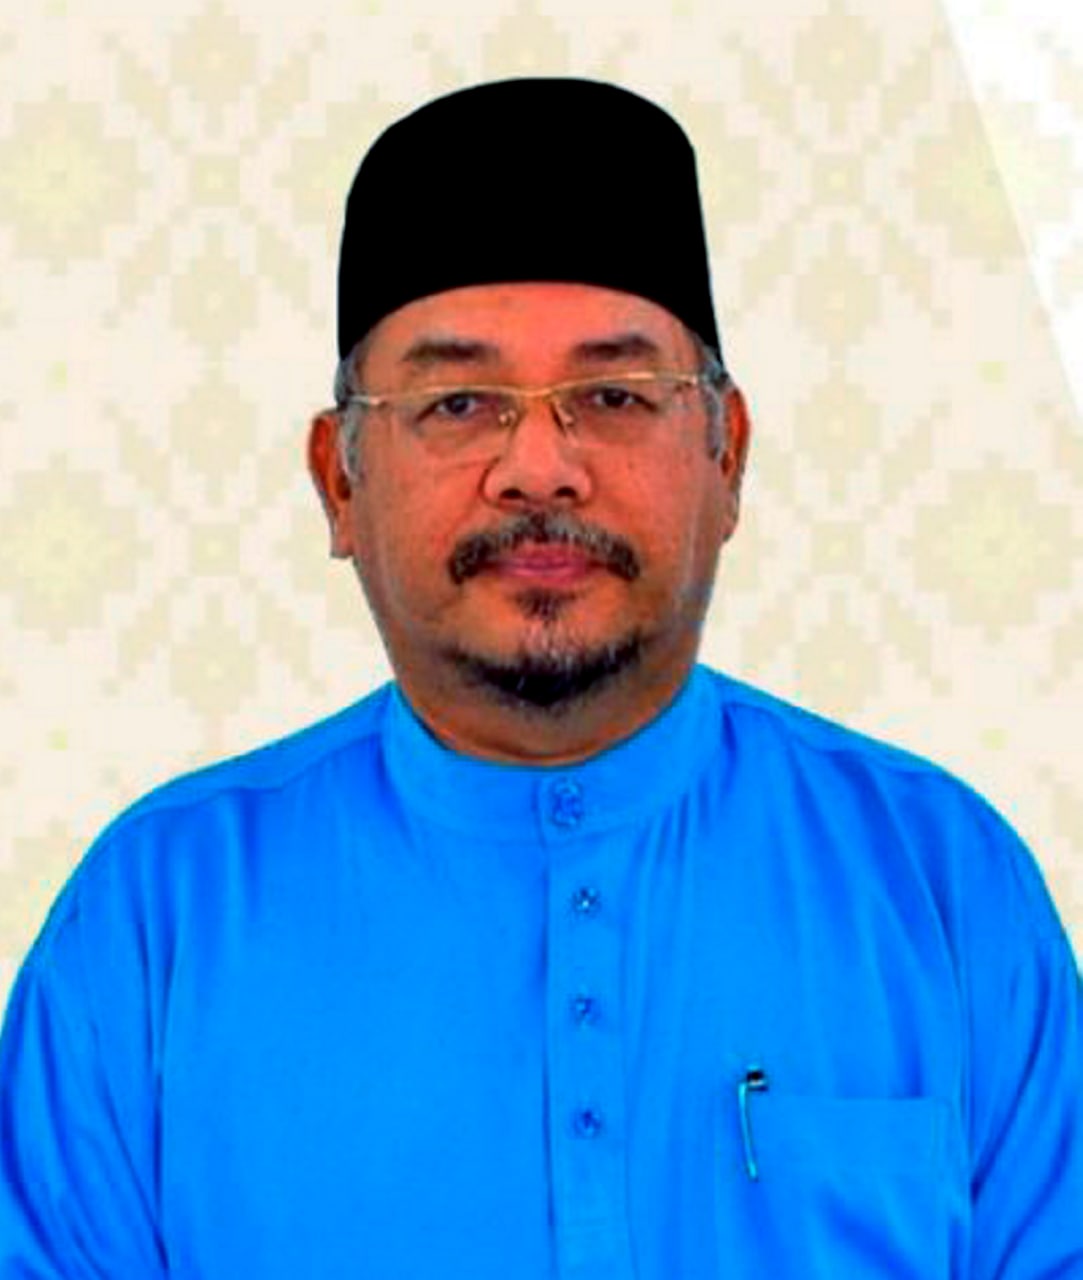 Semua masjid di Pahang diarah baca qunut nazilah setiap kali solat Jumaat